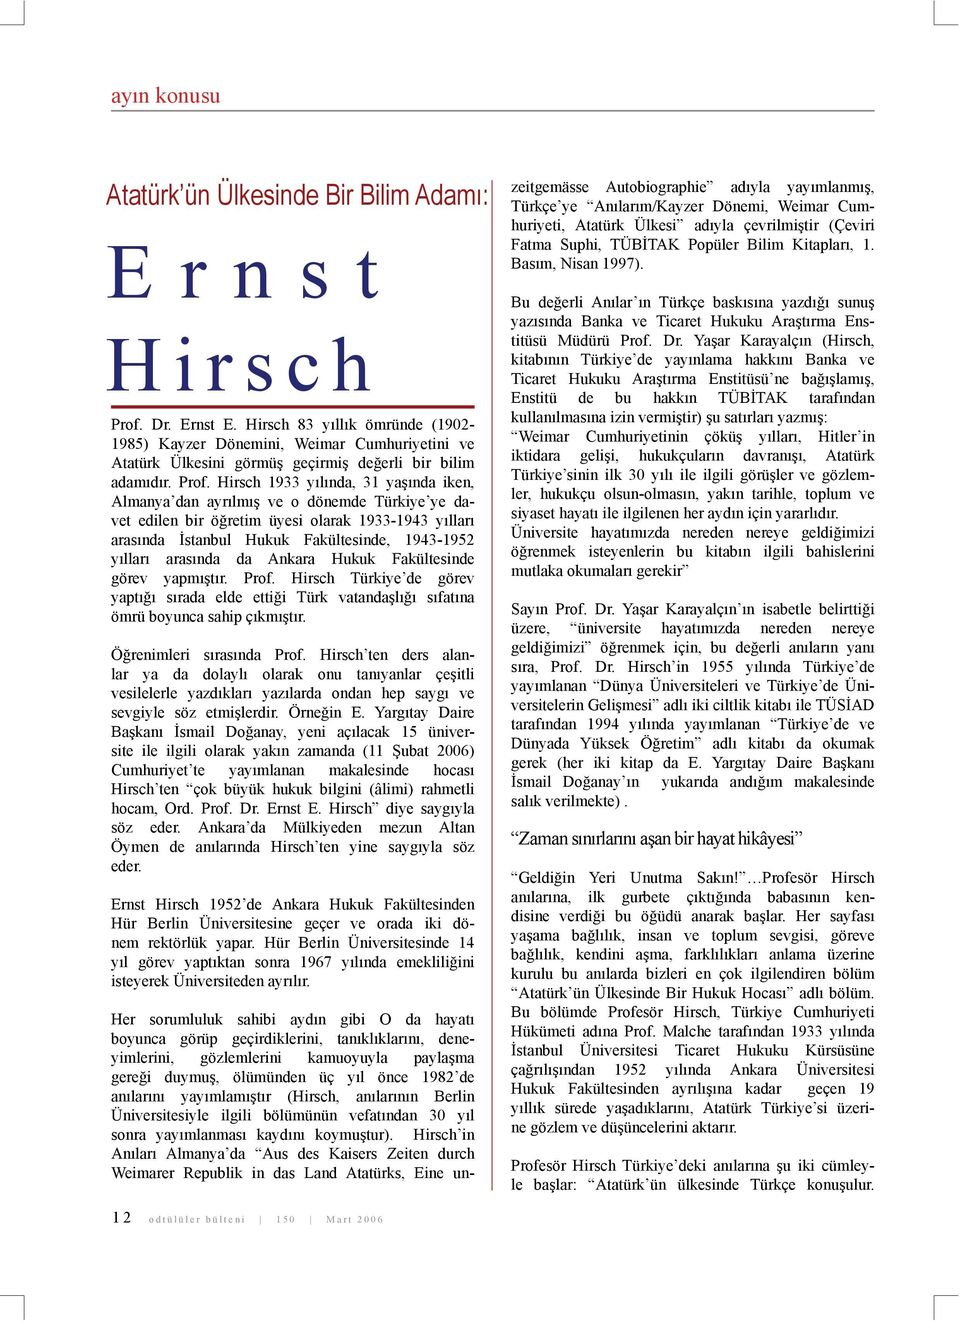 Hirsch 1933 yılında, 31 yaşında iken, Almanya dan ayrılmış ve o dönemde Türkiye ye davet edilen bir öğretim üyesi olarak 1933-1943 yılları arasında İstanbul Hukuk Fakültesinde, 1943-1952 yılları